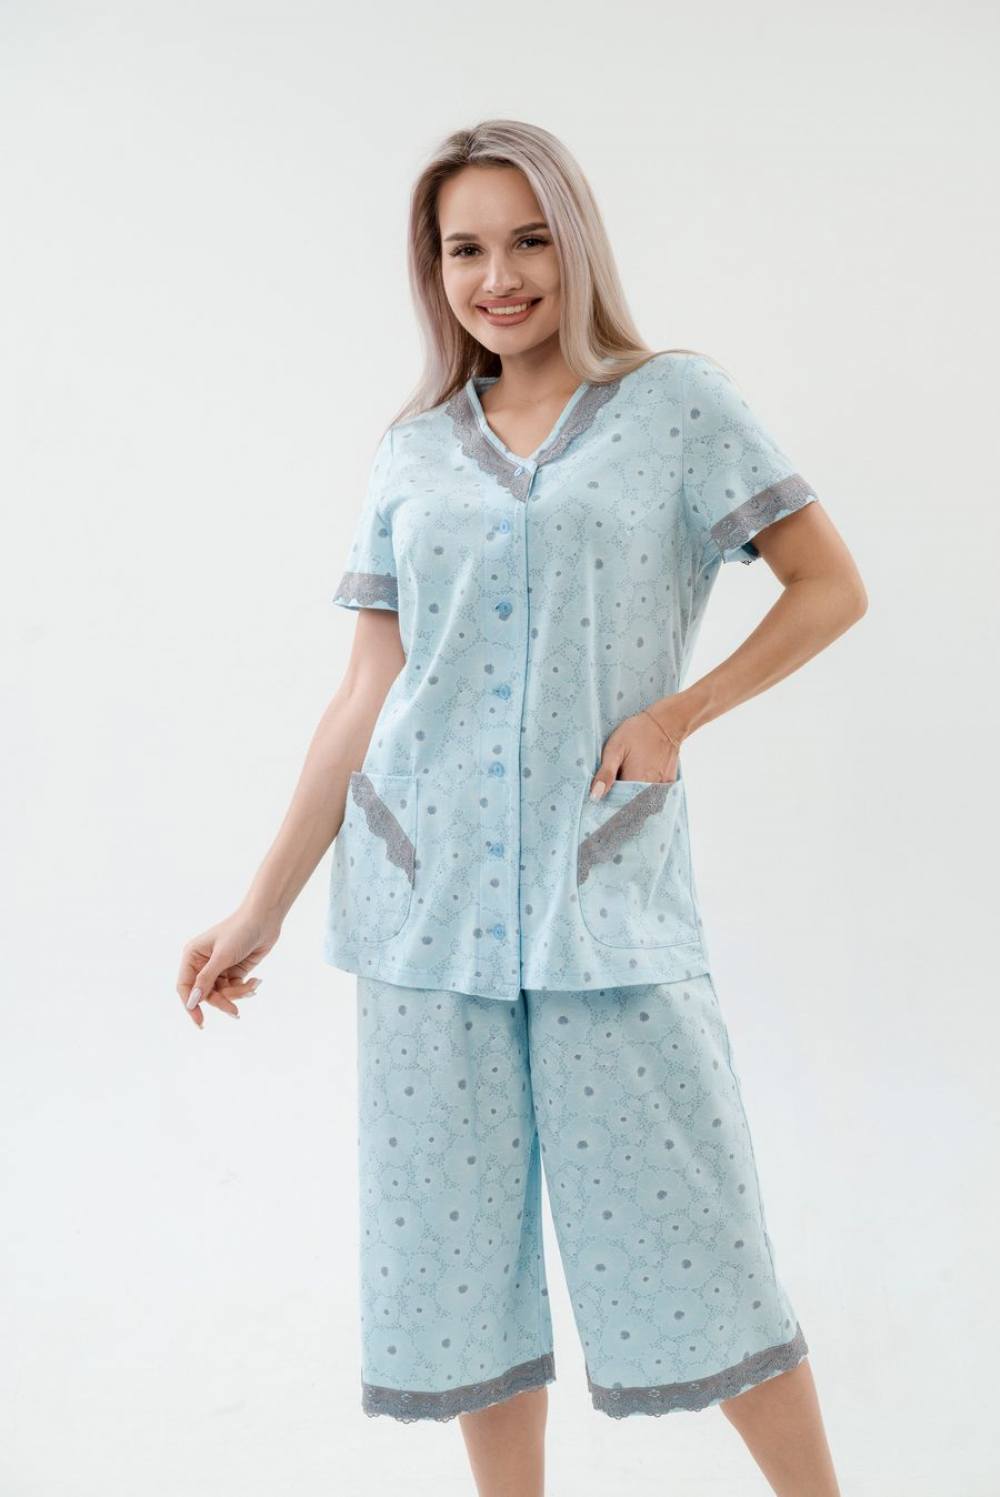 Пижама женская с бриджами. Артикул 000005444